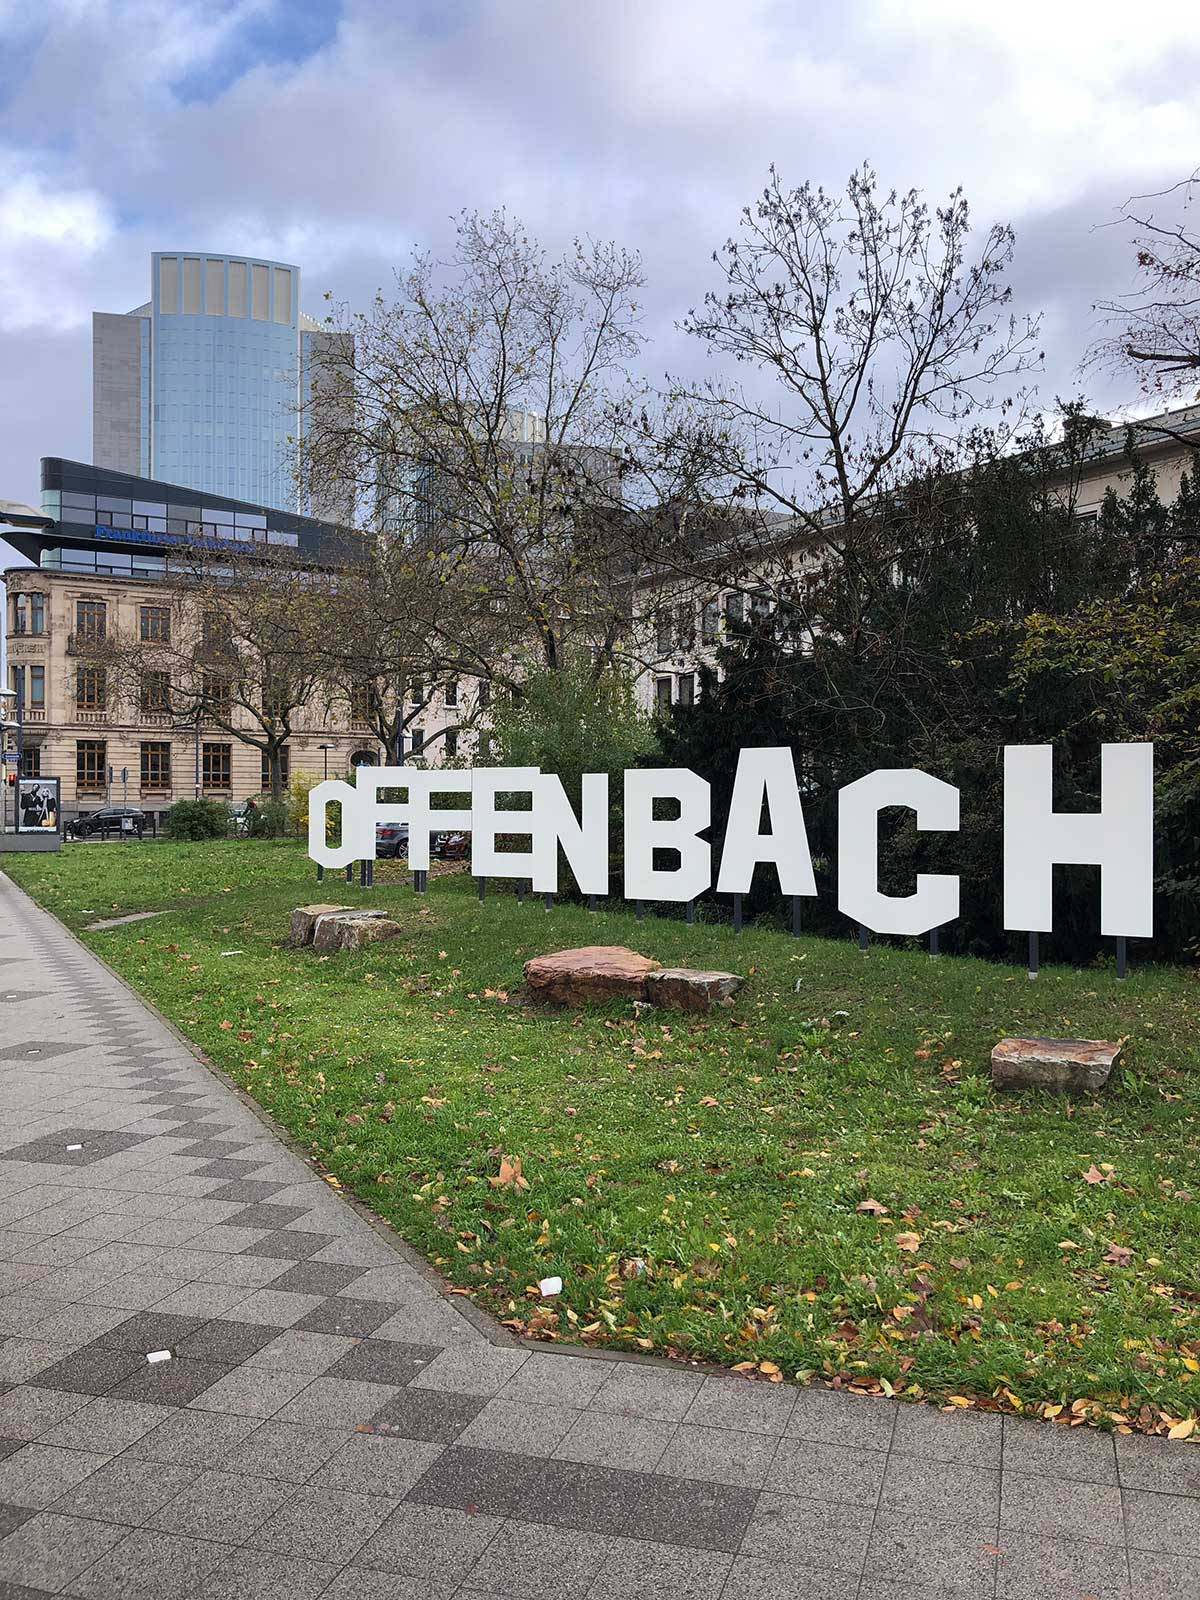 Berliner Straße ist neuer Standort für den großen Offenbach-Schriftzug